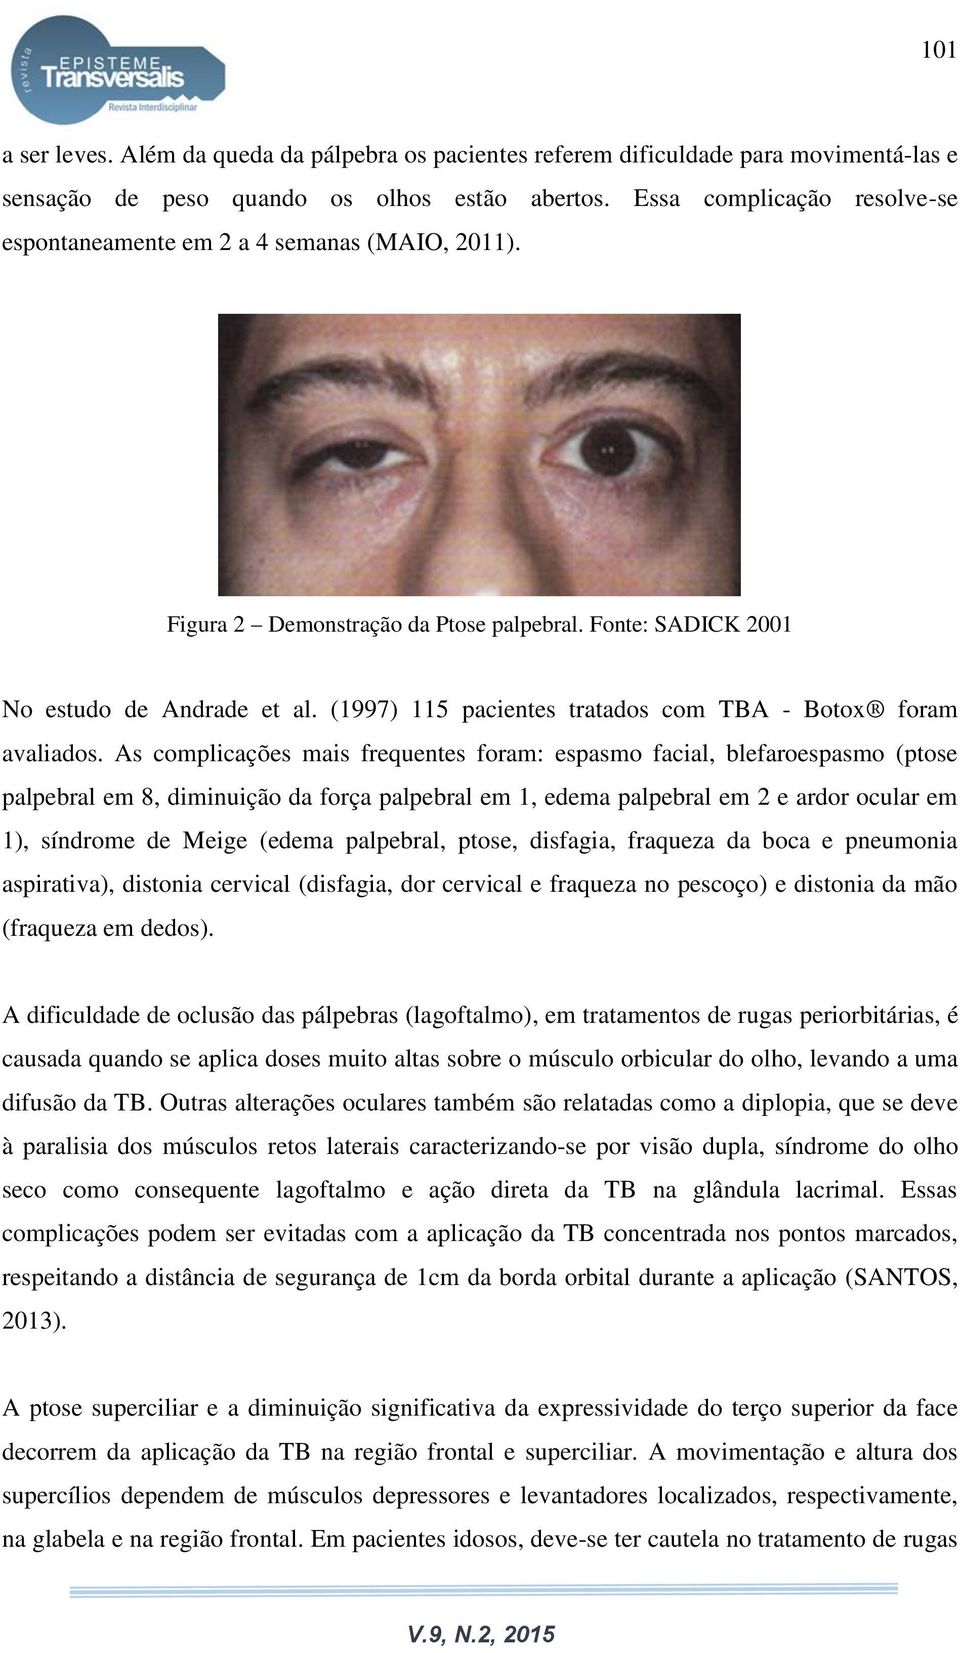 (1997) 115 pacientes tratados com TBA - Botox foram avaliados.